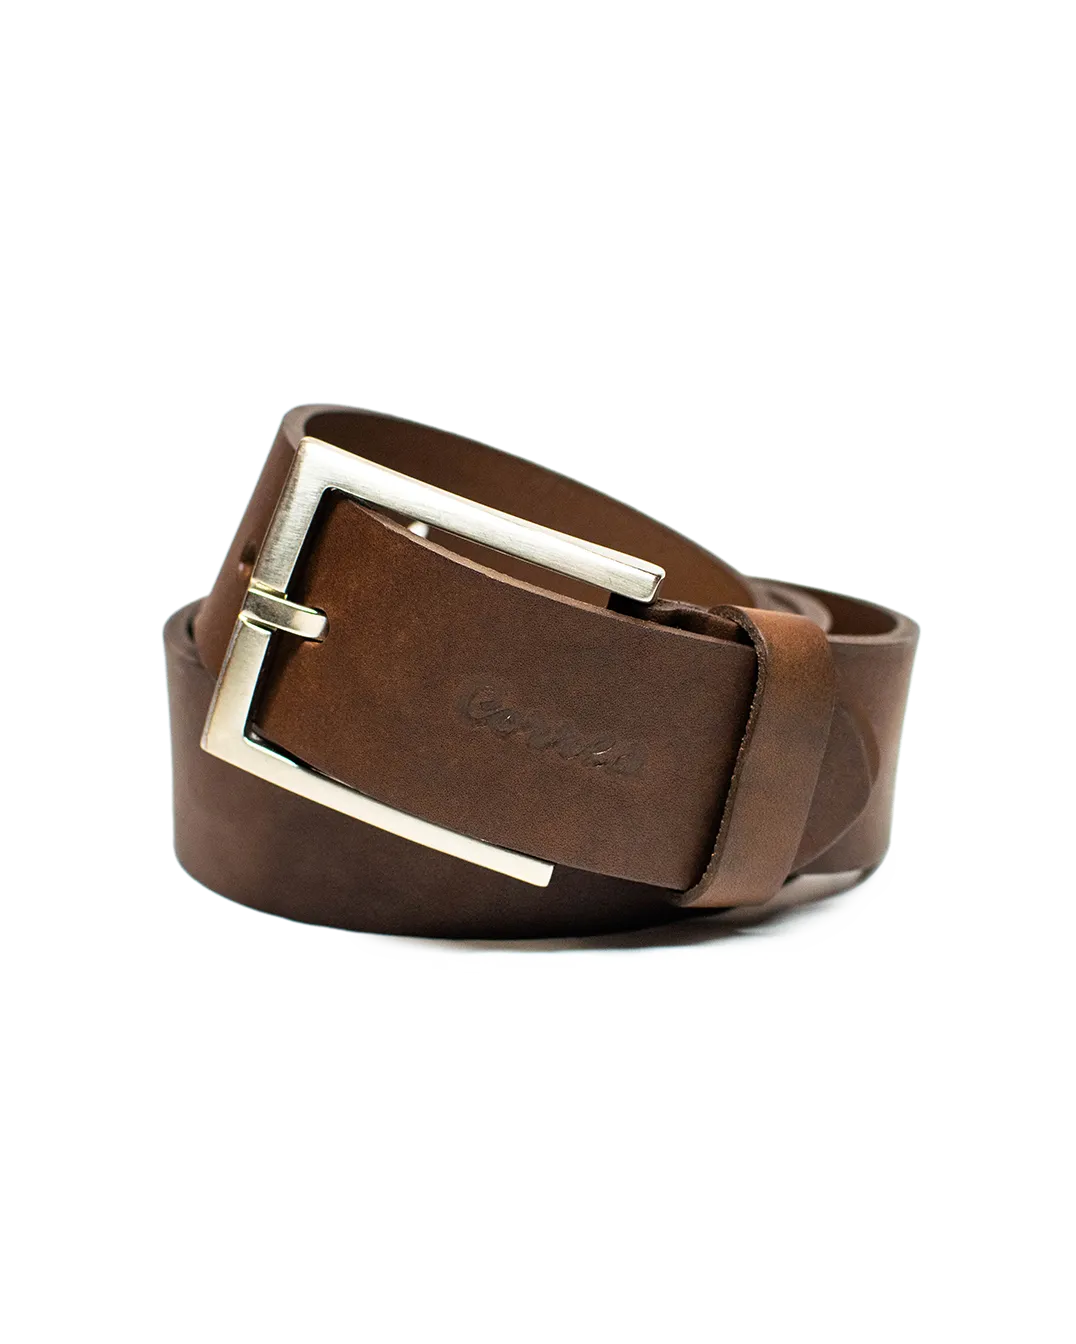 Cinturón Rústico de color marrón